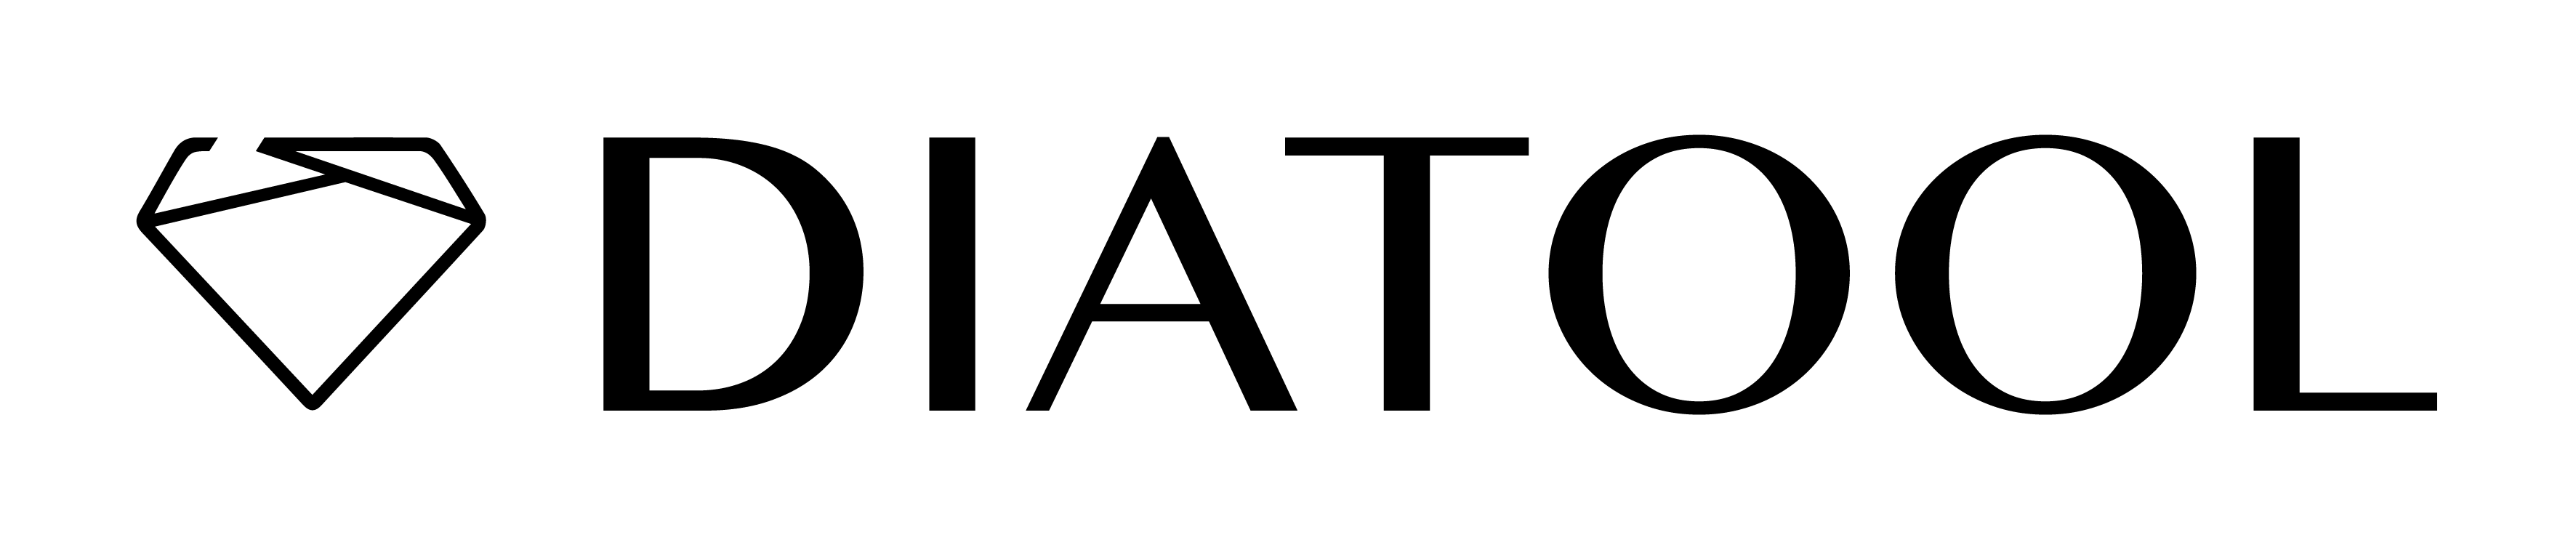 Diatool reaming logo